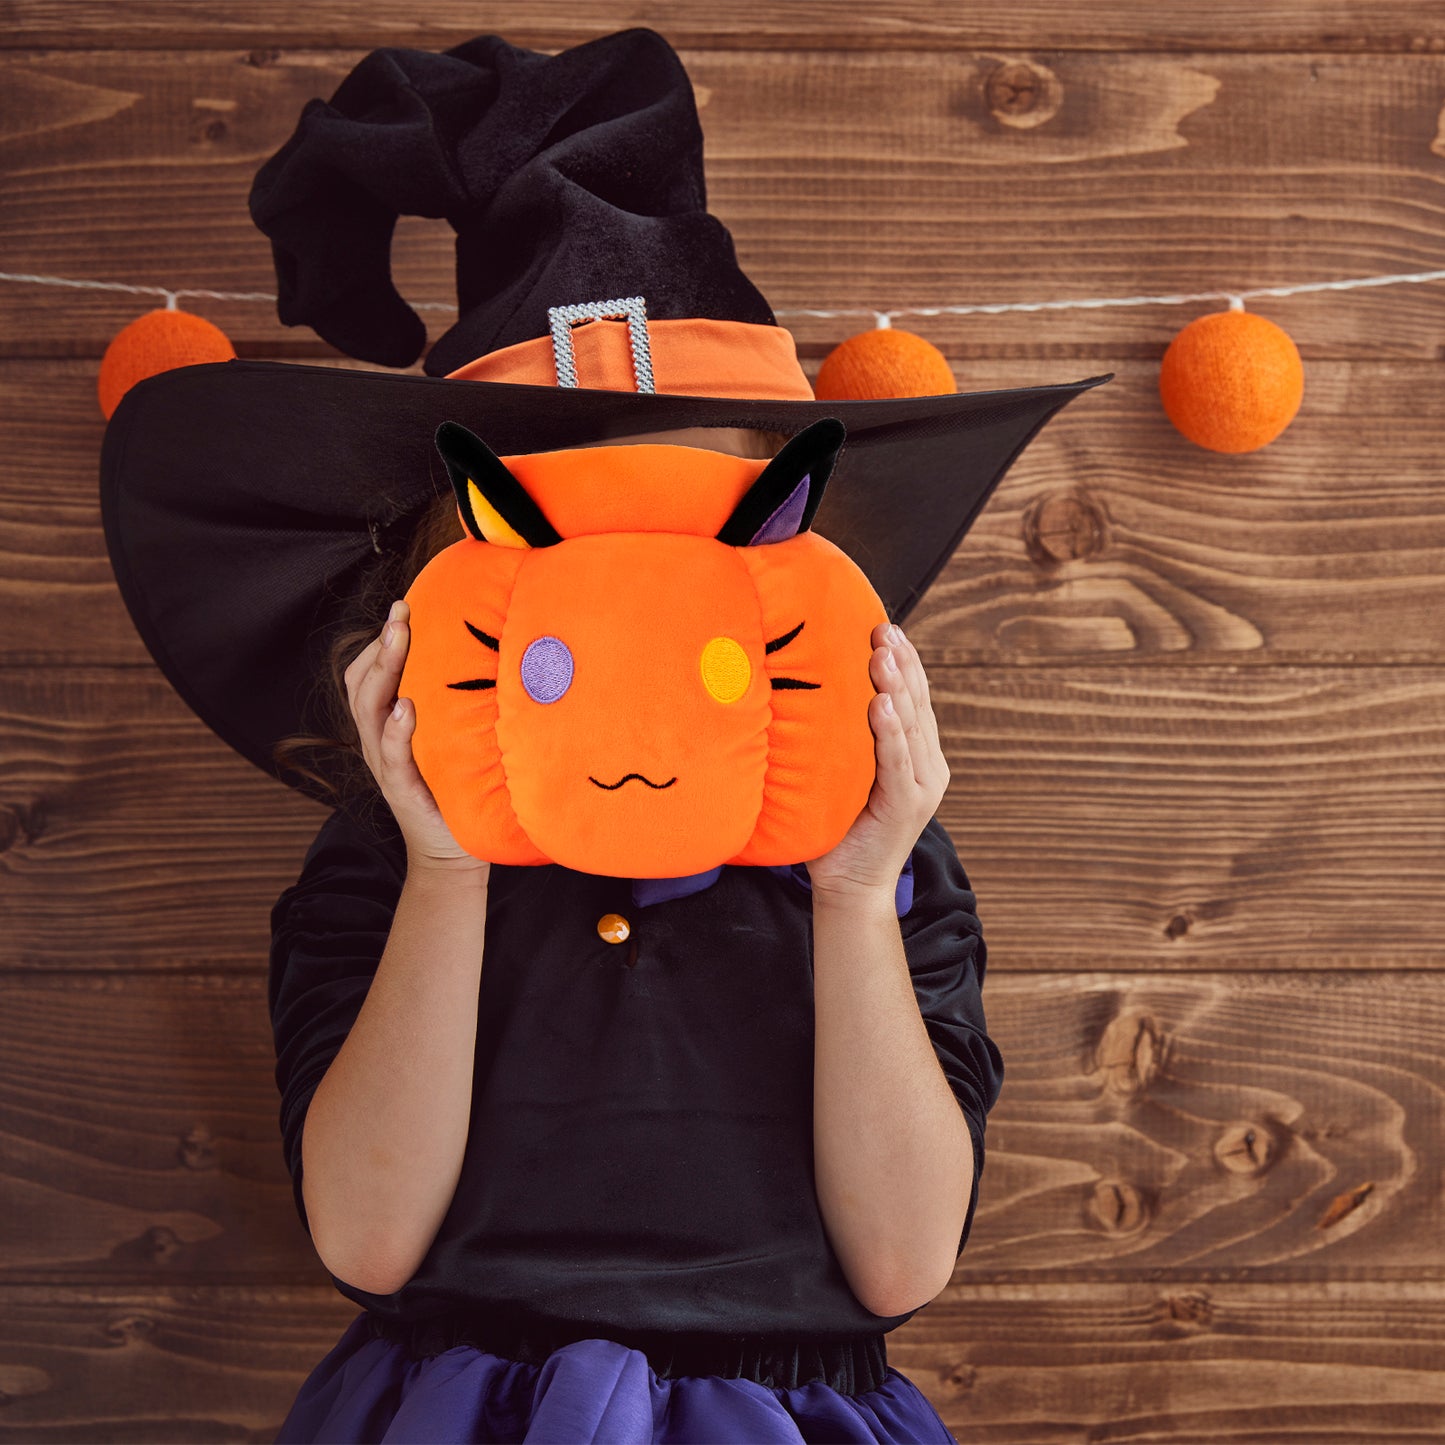 Niuniudaddy halloween pumpkin plush